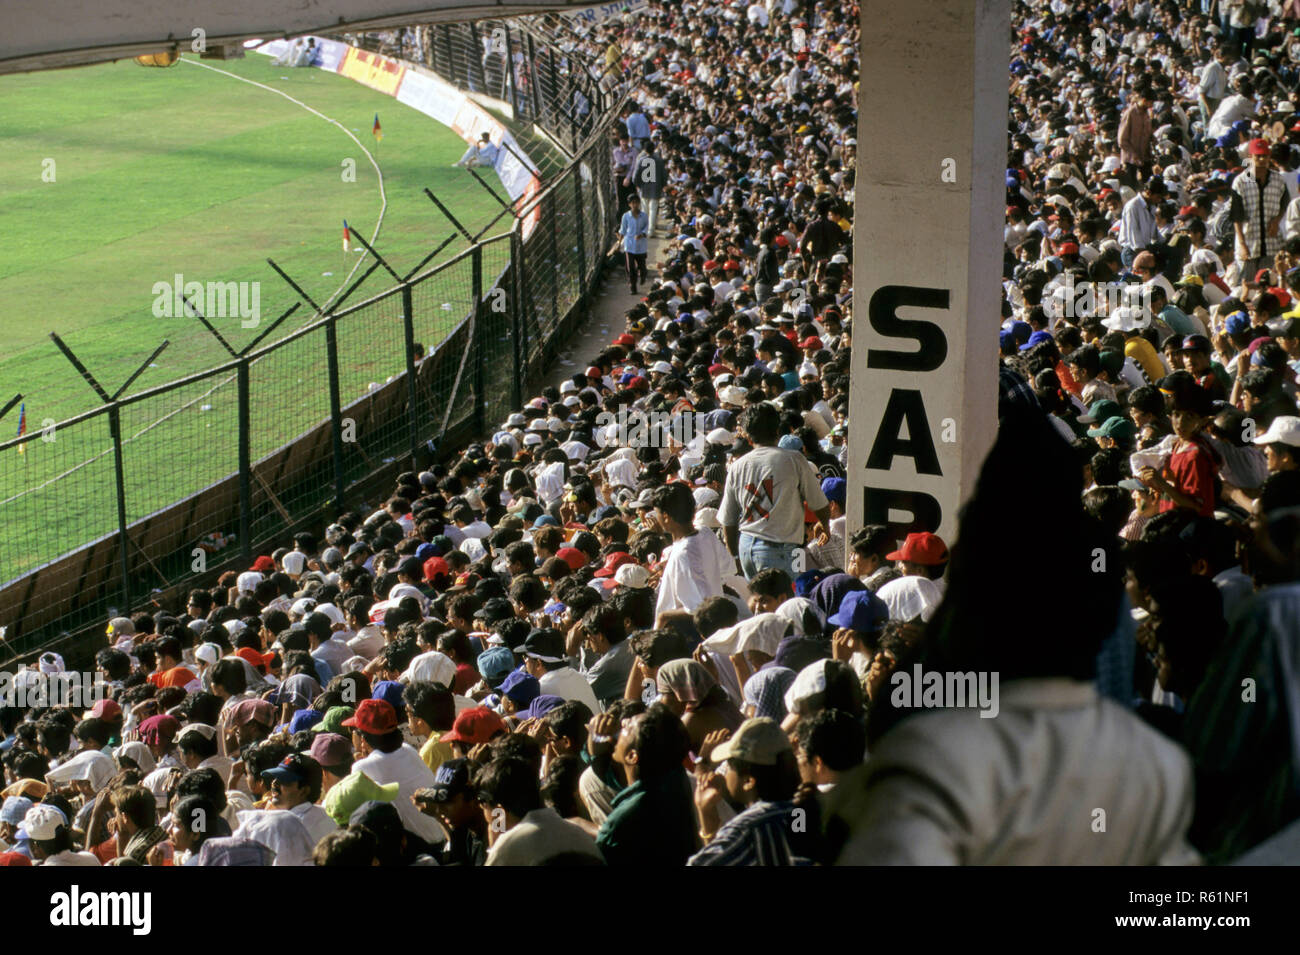 Spectators at Wankhede Stadium, Mumbai, Maharashtra, India Stock Photo